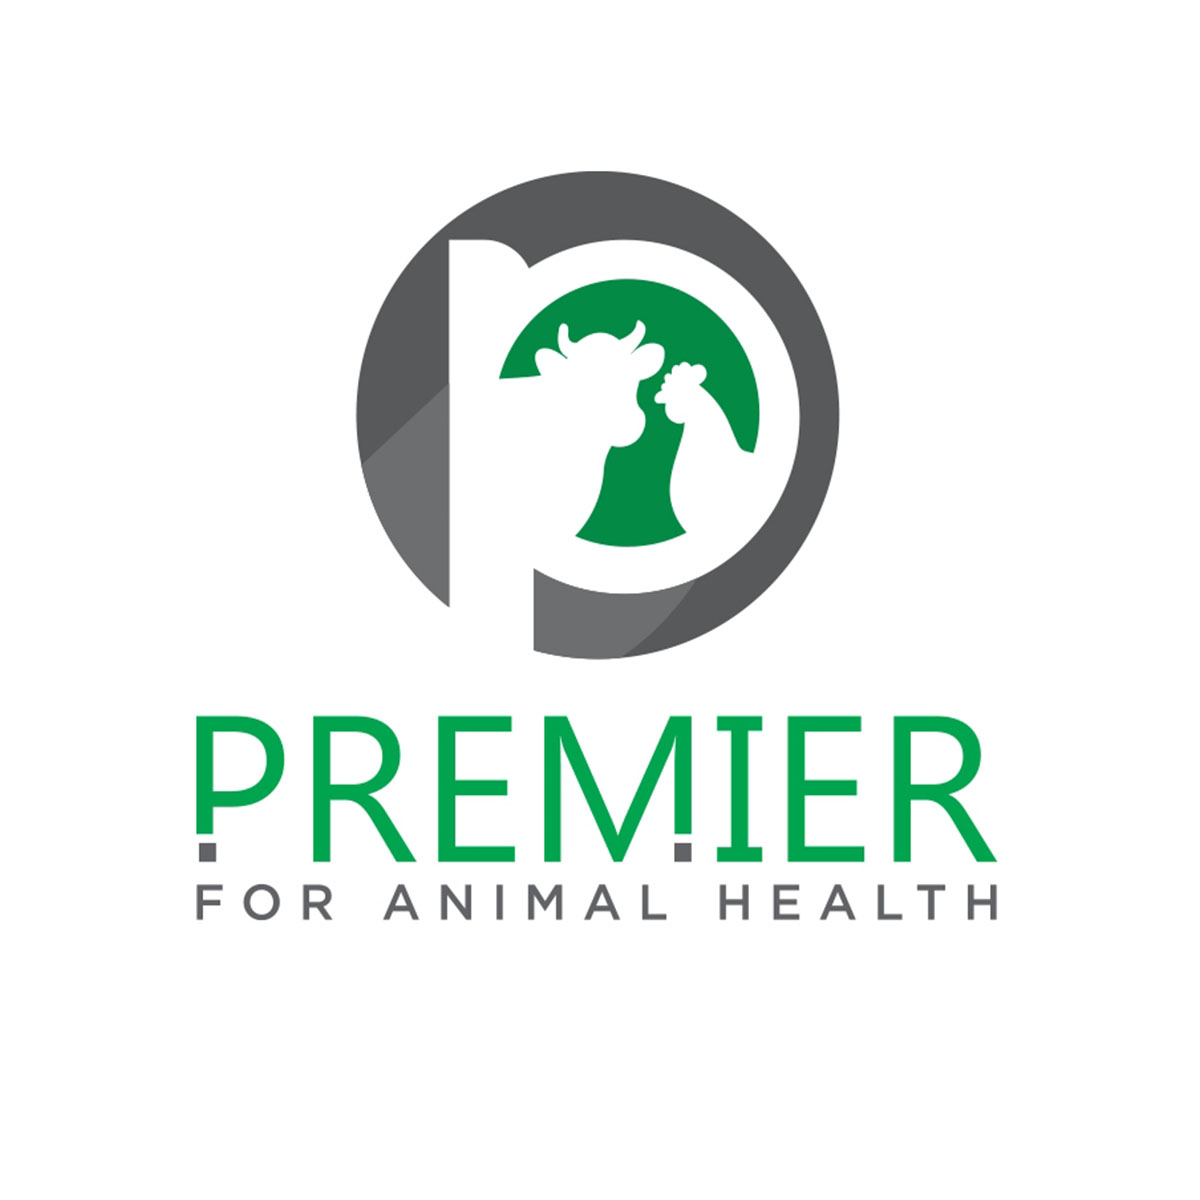 شركات الادوية البيطرية: بريمييه لصحة الحيوان Premier For Animal Health